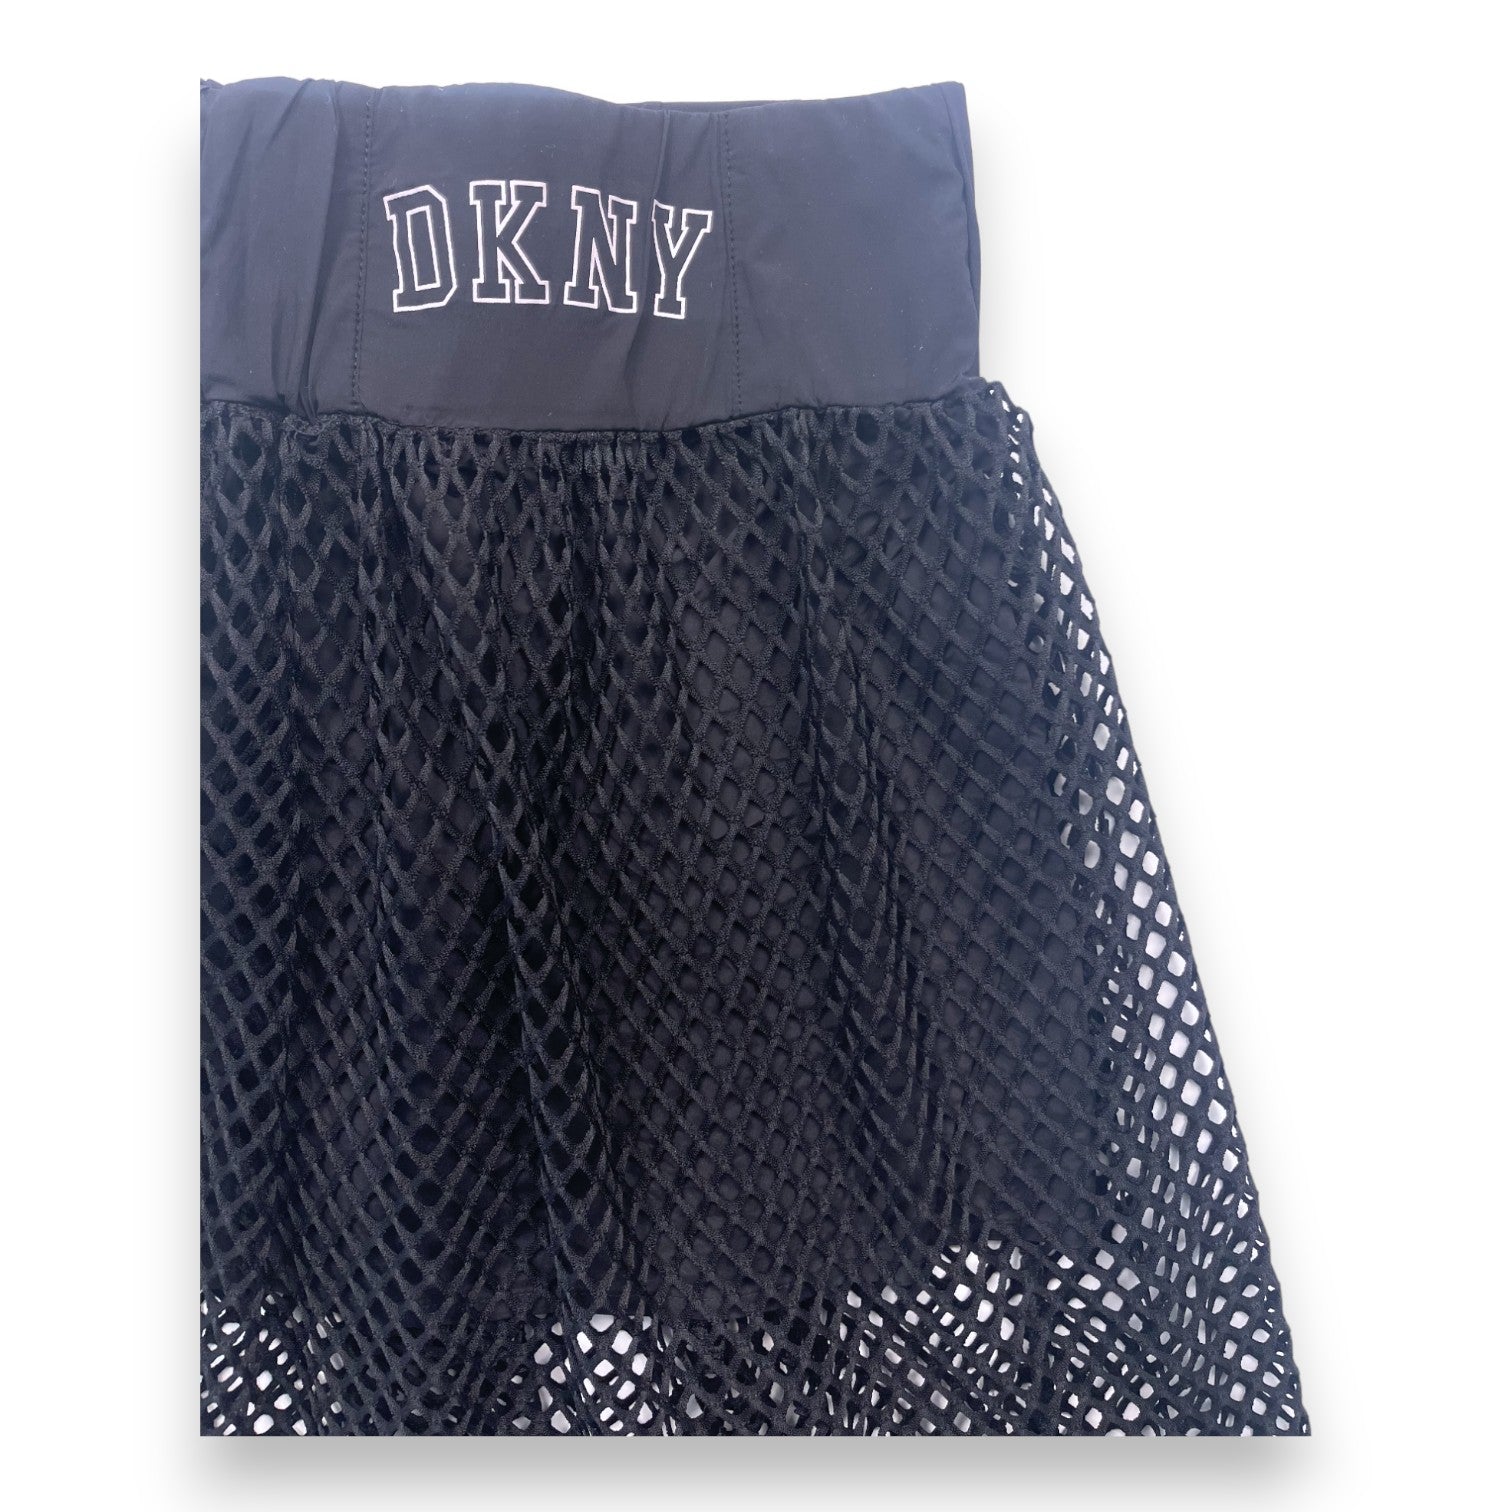 DKNY - Jupe trapèze noire effet filet - 8 ans